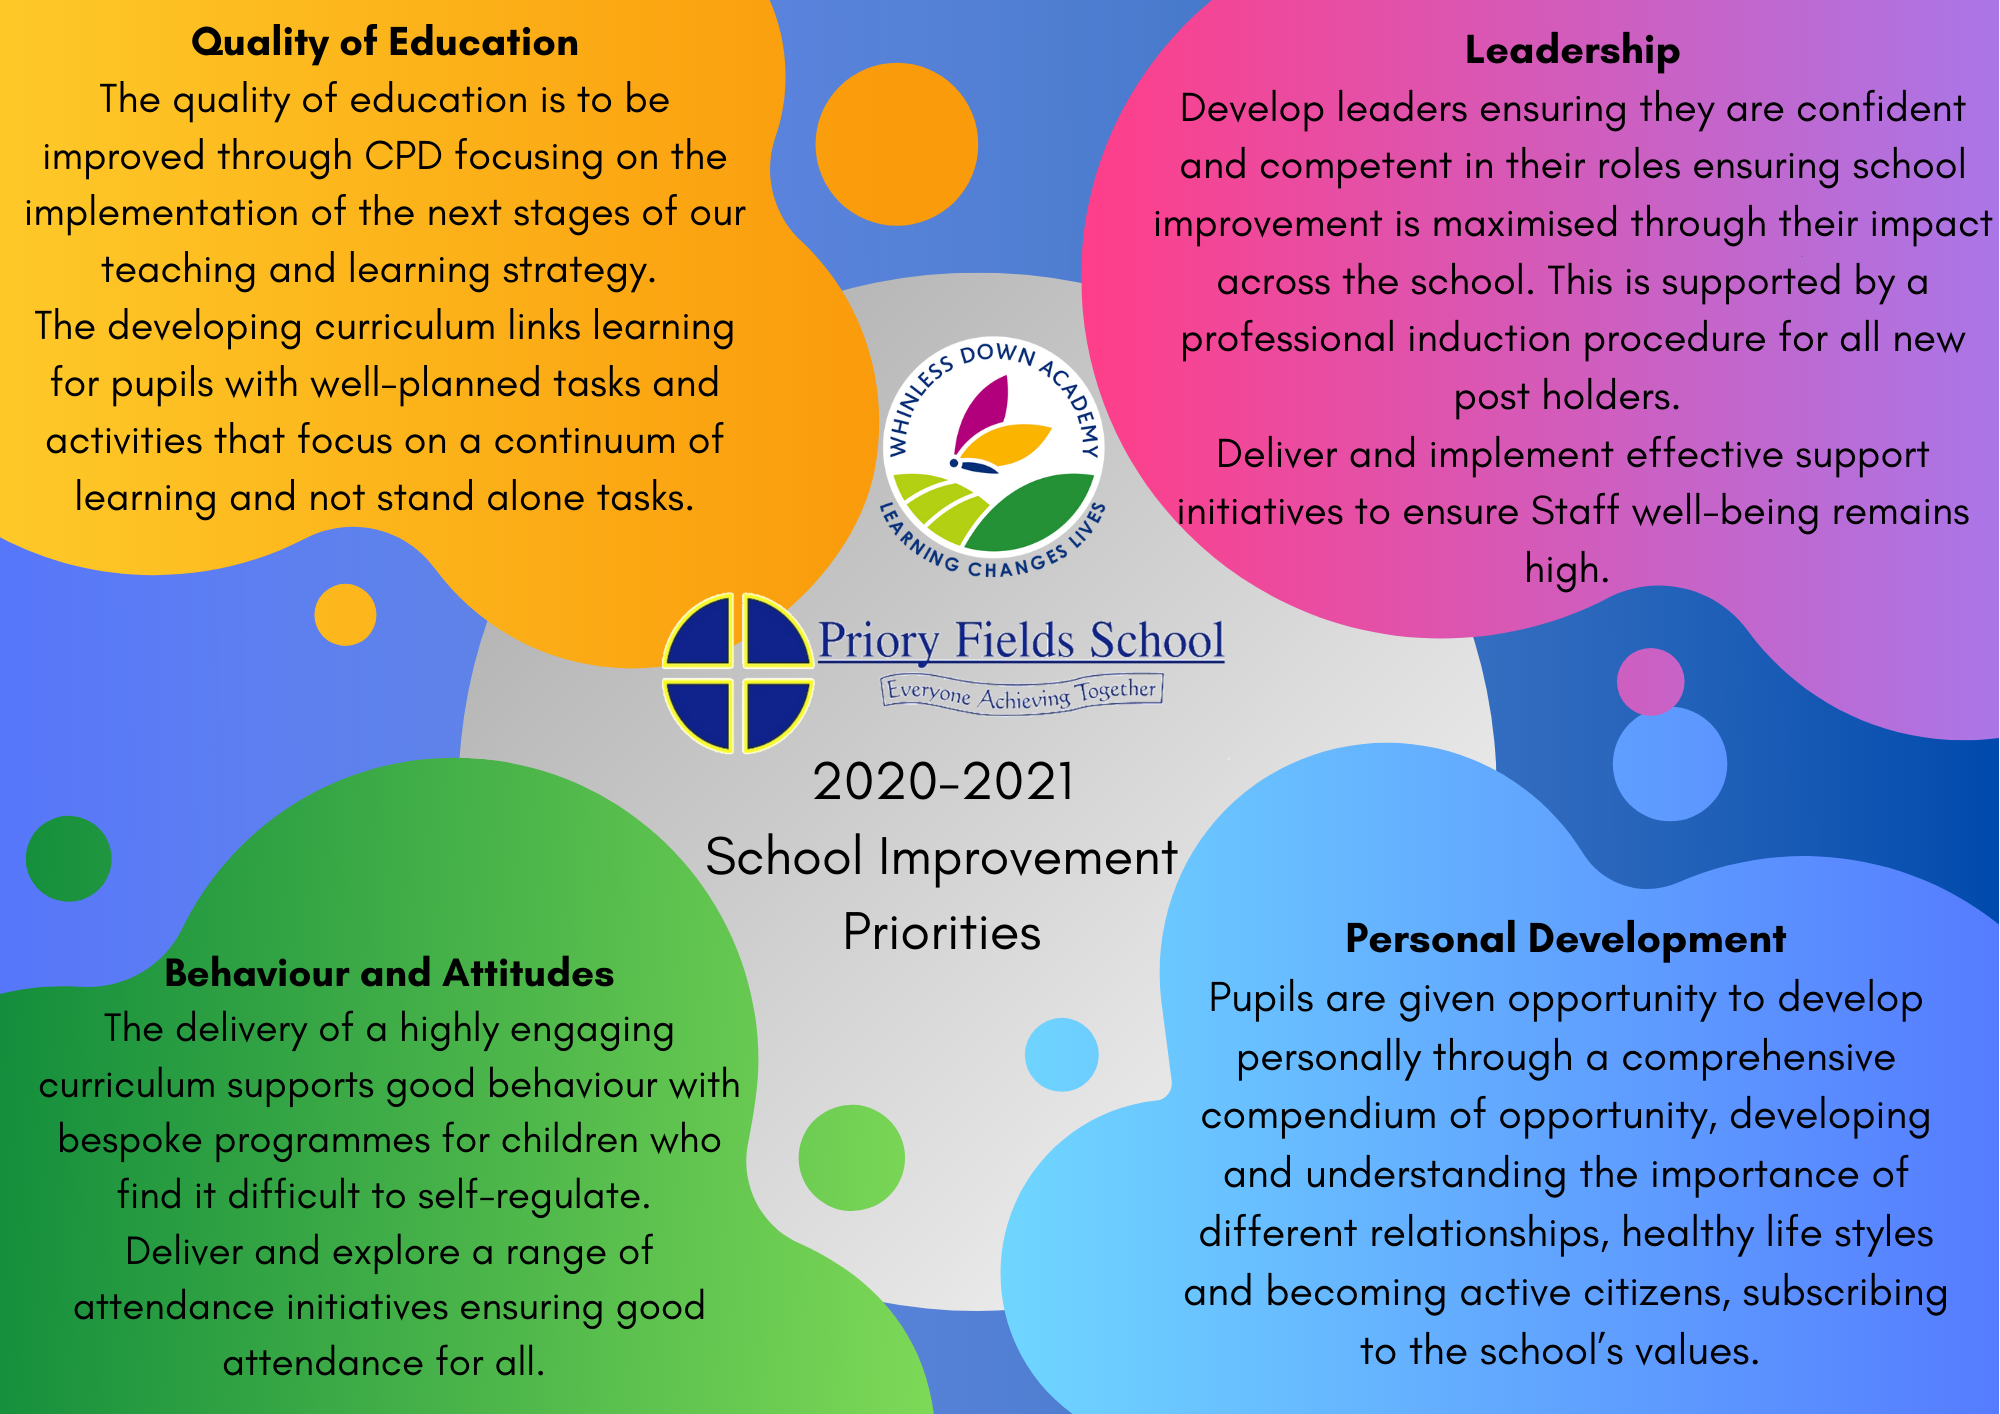 2020 to 2021 school improvement priorities information